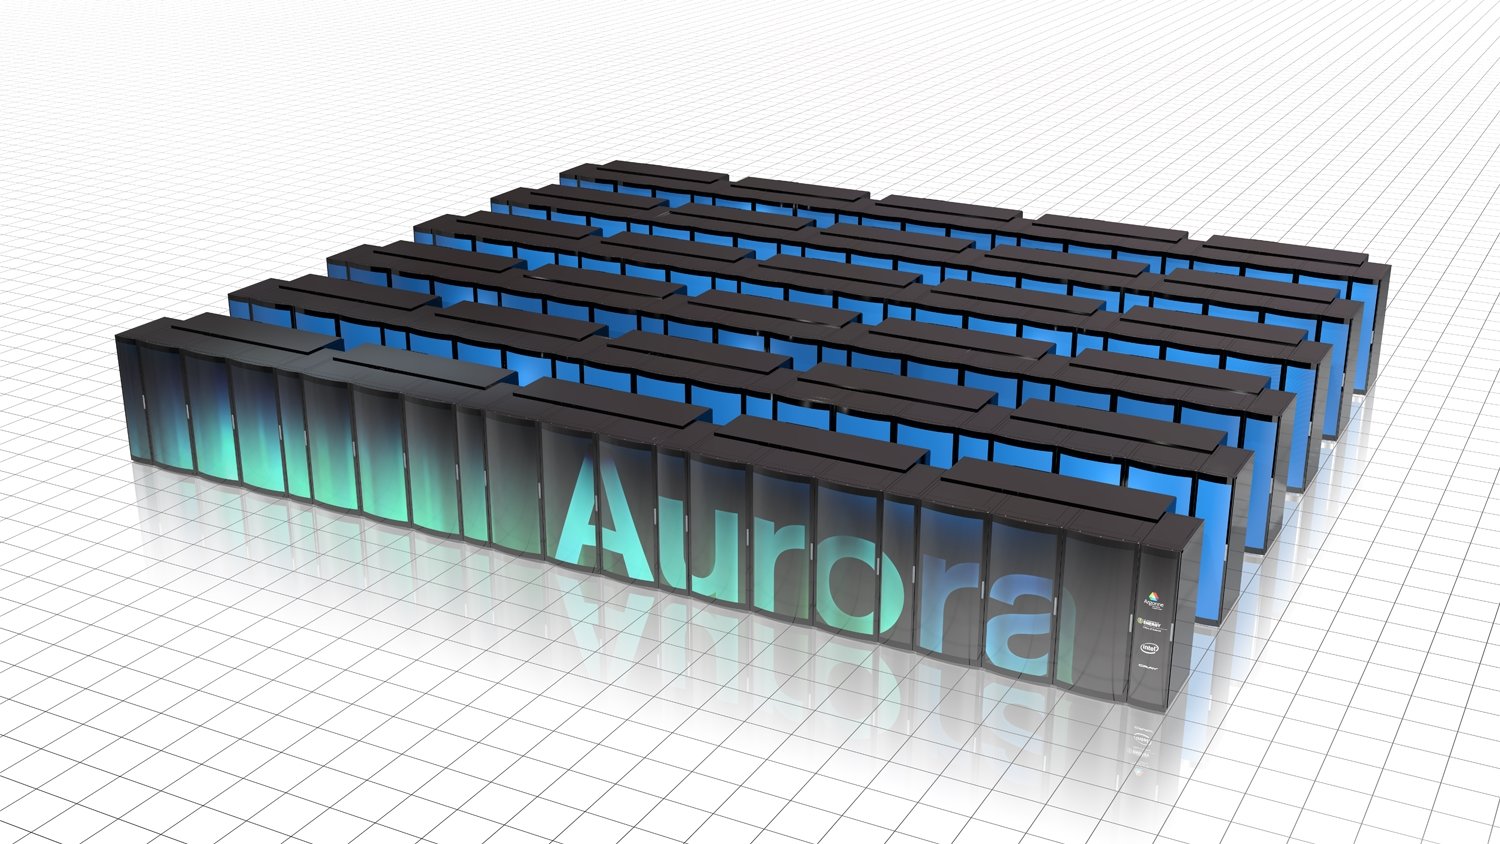 Supercomputer Aurora